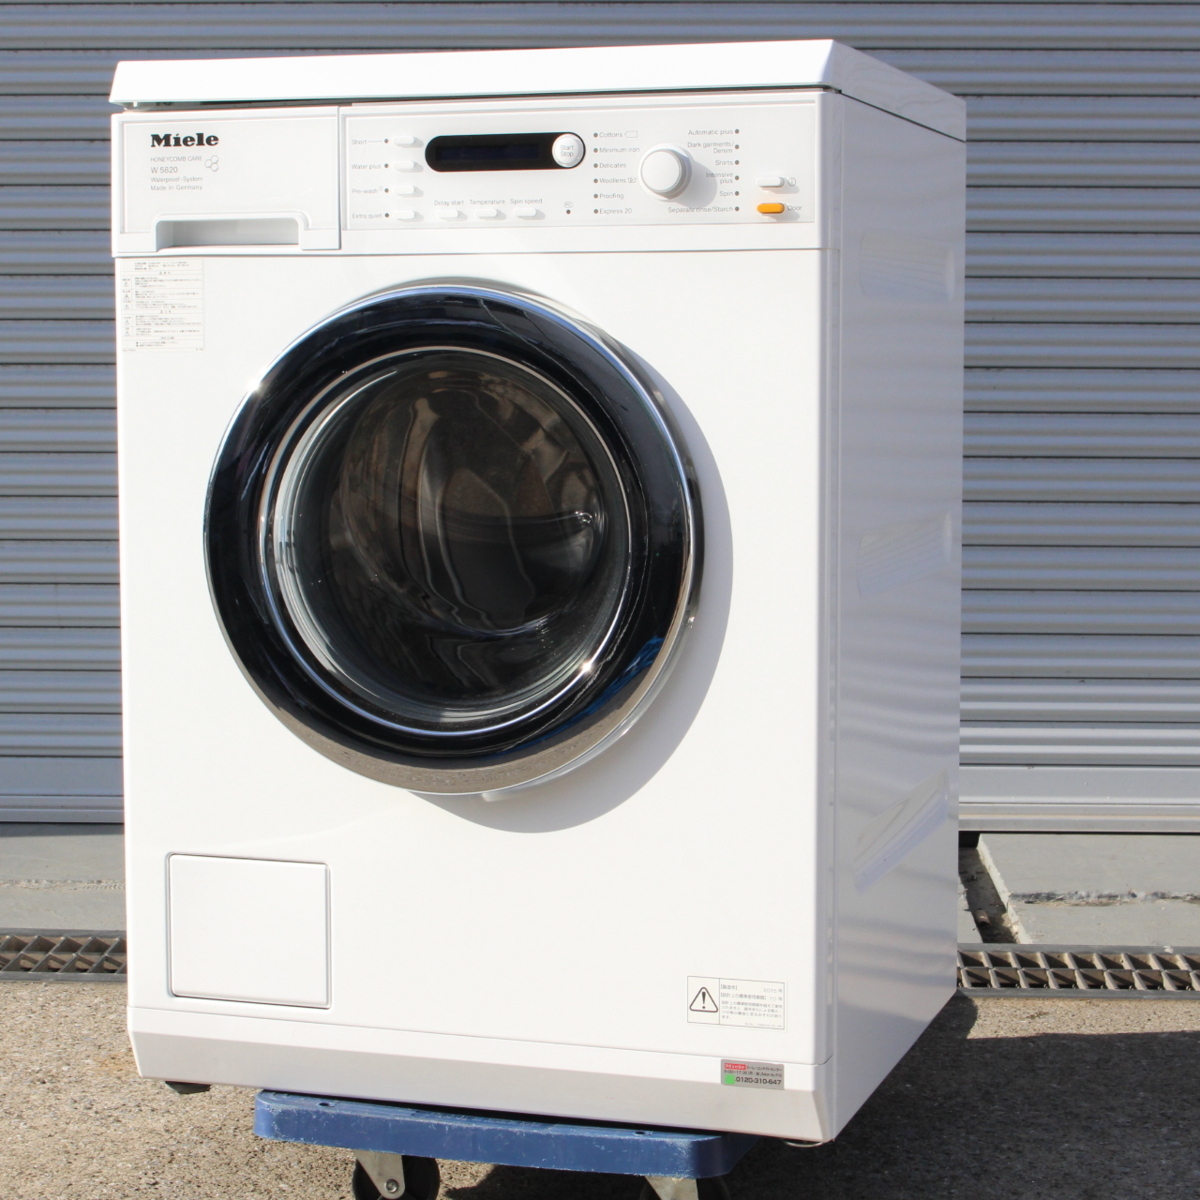 東京都新宿区にて Miele 洗濯機 W5820 2015年製 を出張買取させて頂きました。